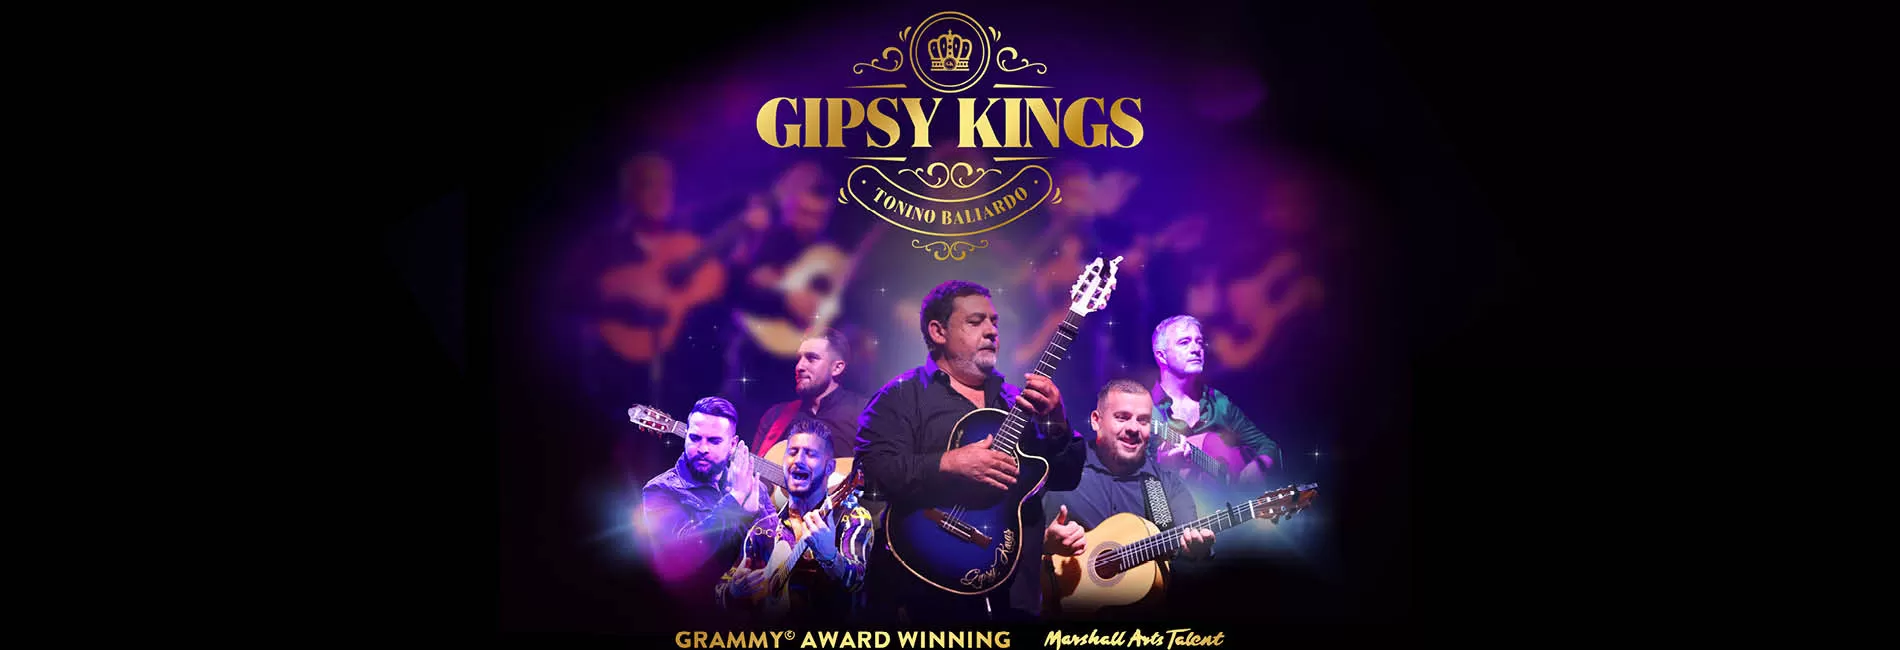 Gipsy Kings feat Tonino Baliardo